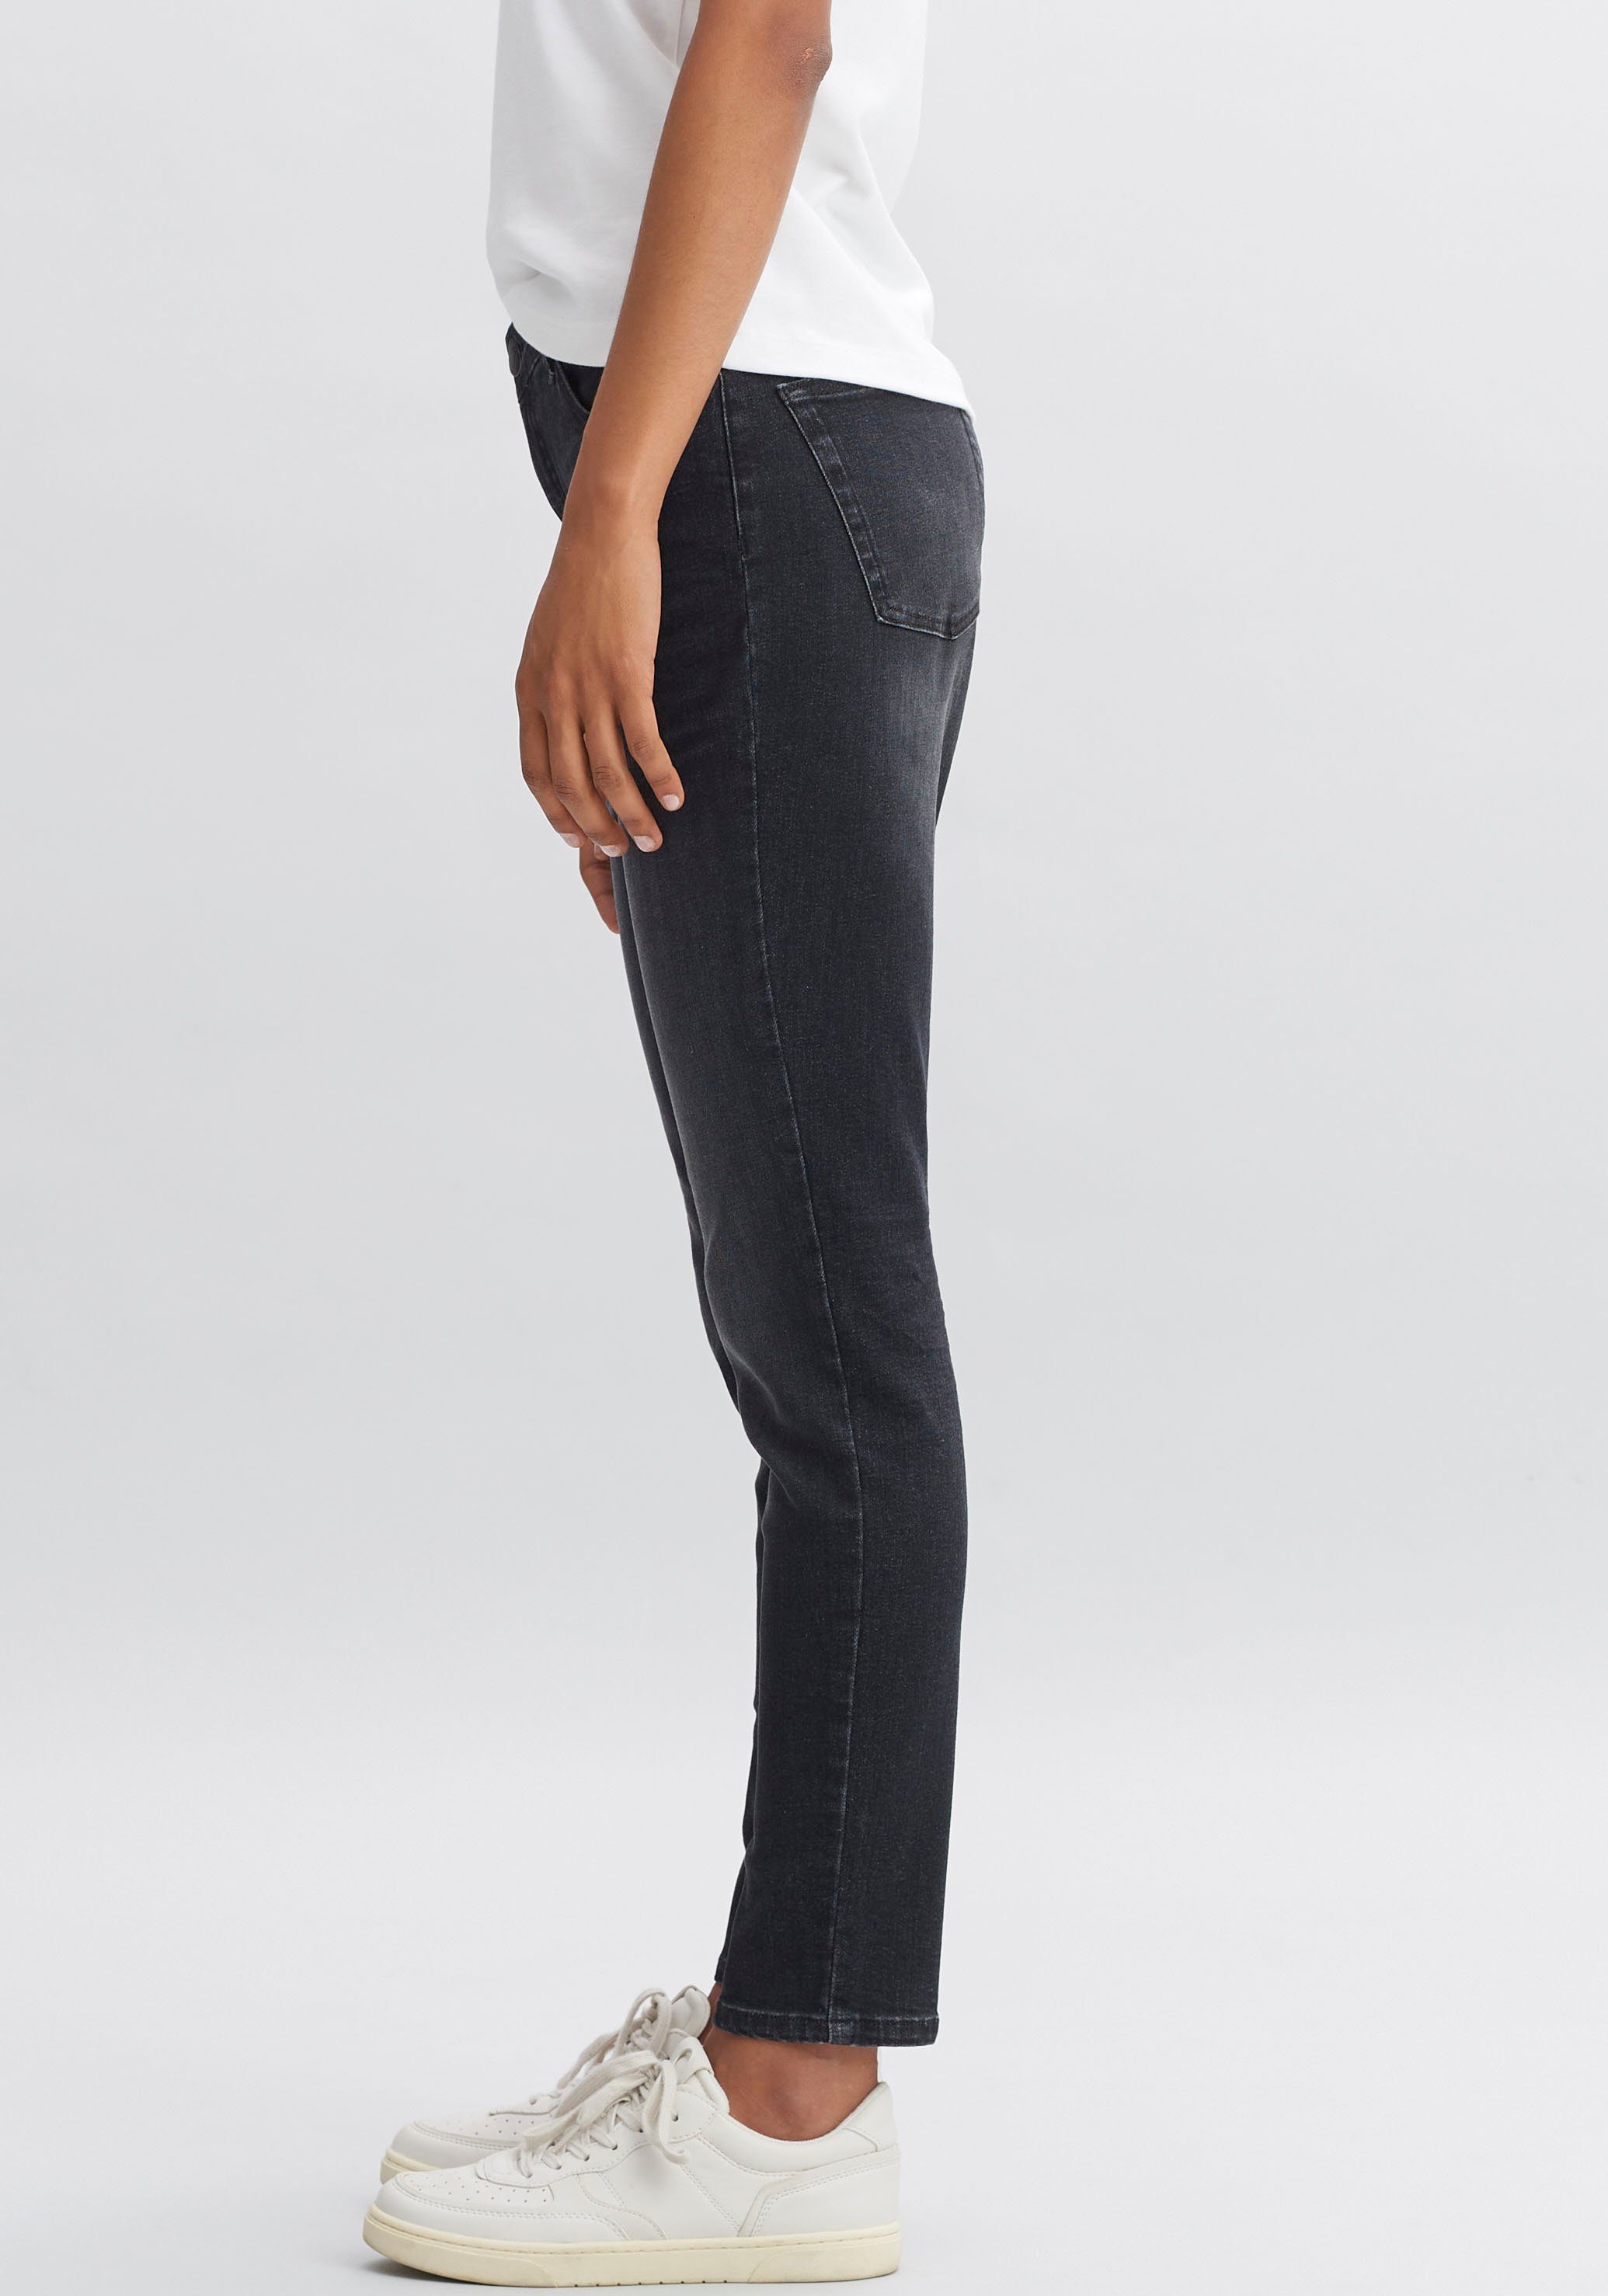 roughen im Look Evita OPUS Slim-fit-Jeans authentischen,